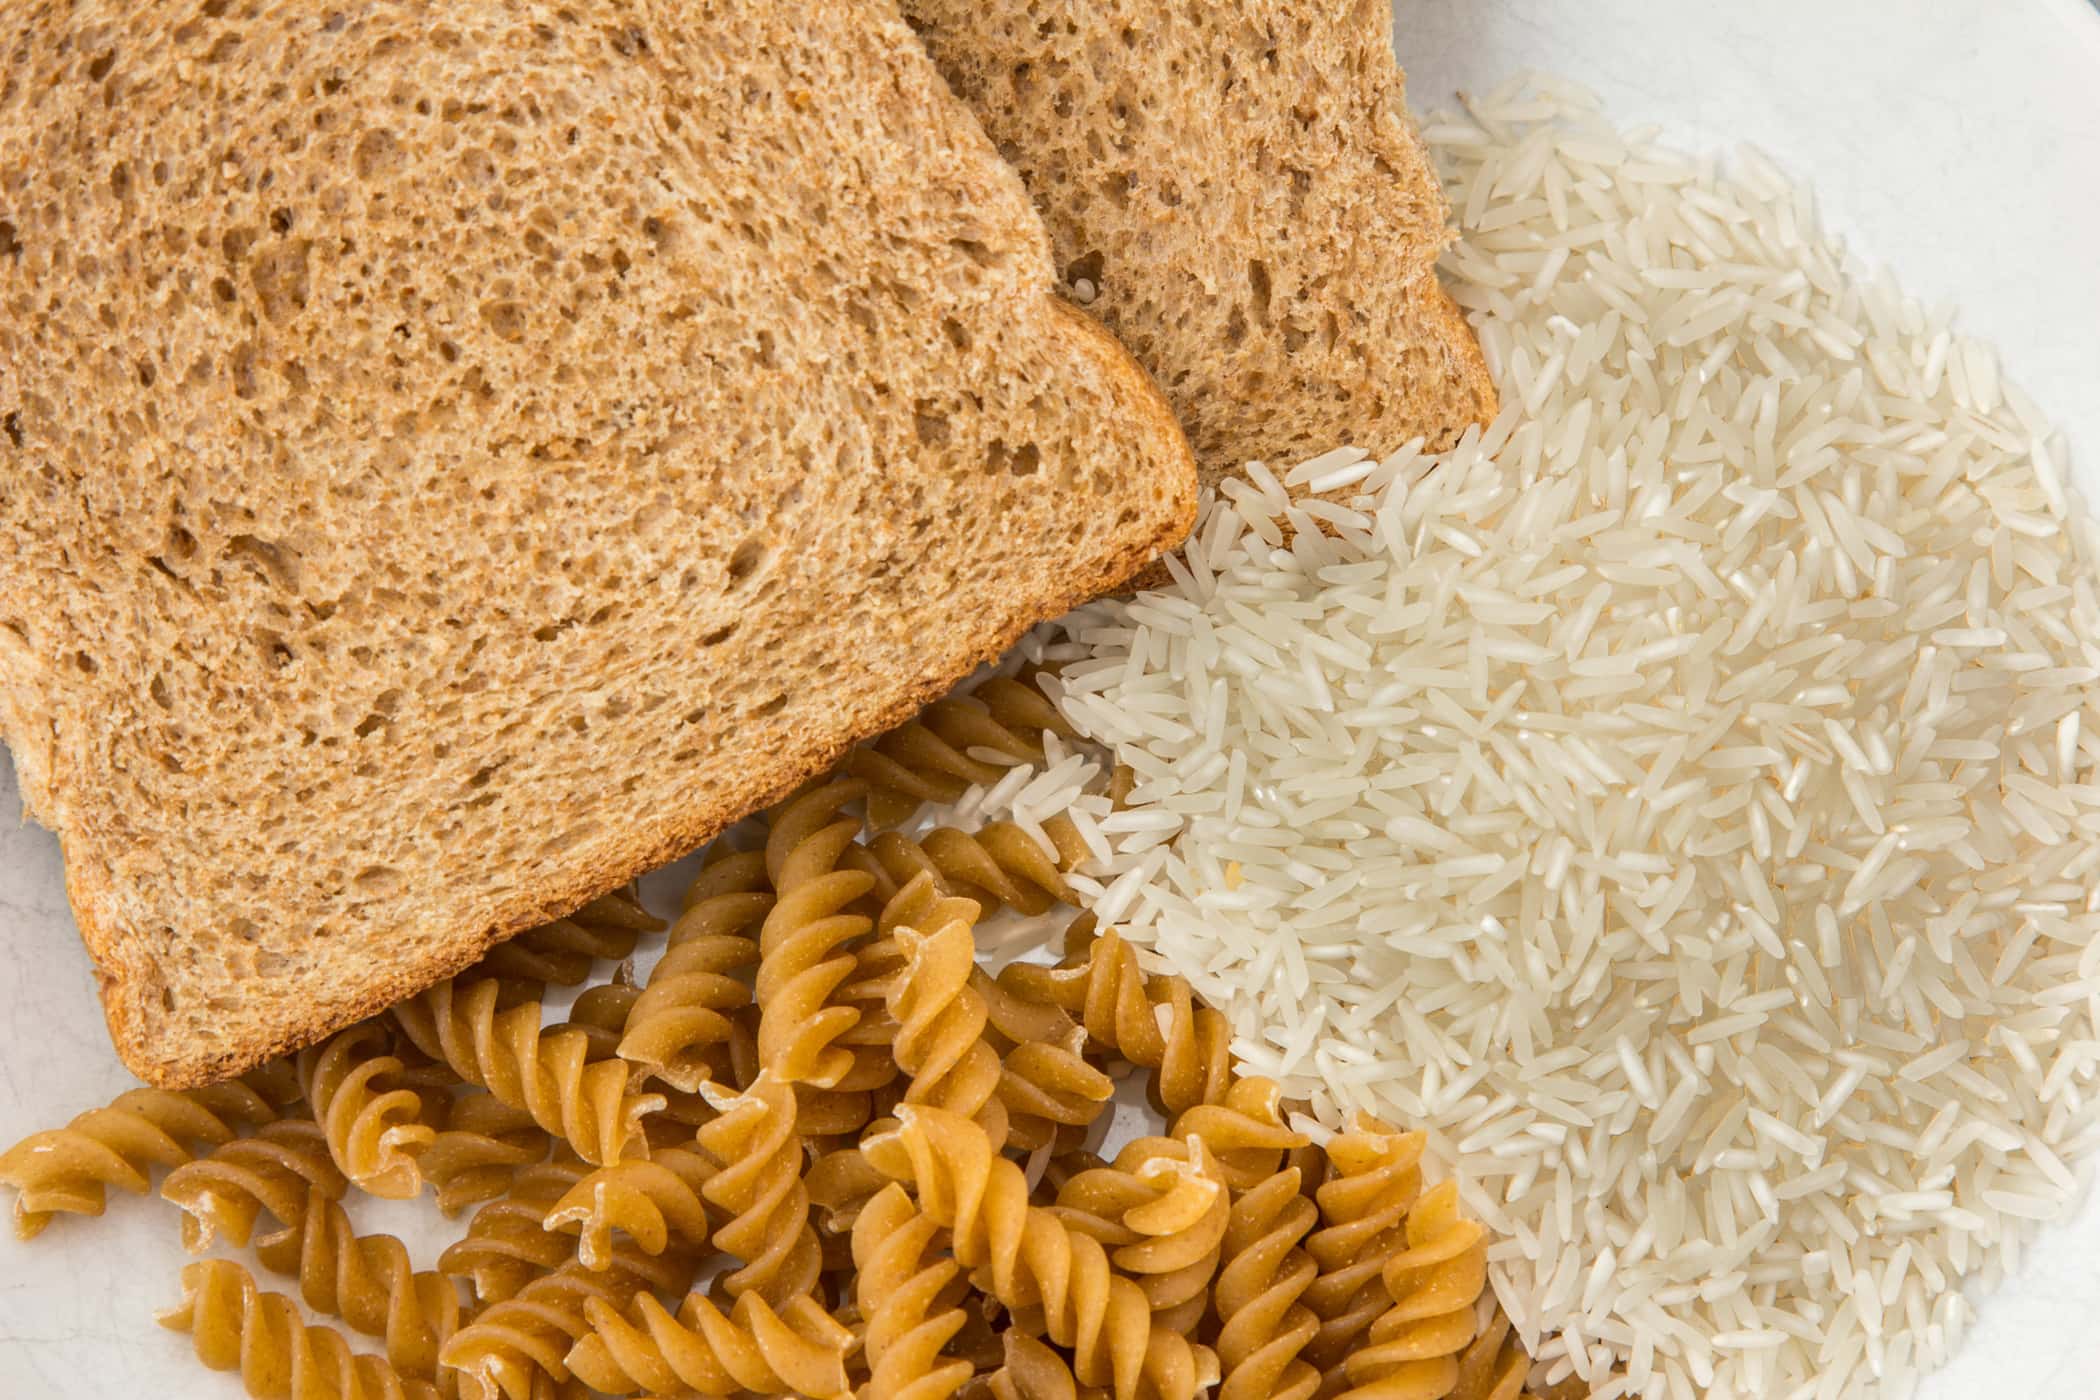 Riso, tagliatelle, pasta e pane: quale fonte di carboidrati è la più salutare?